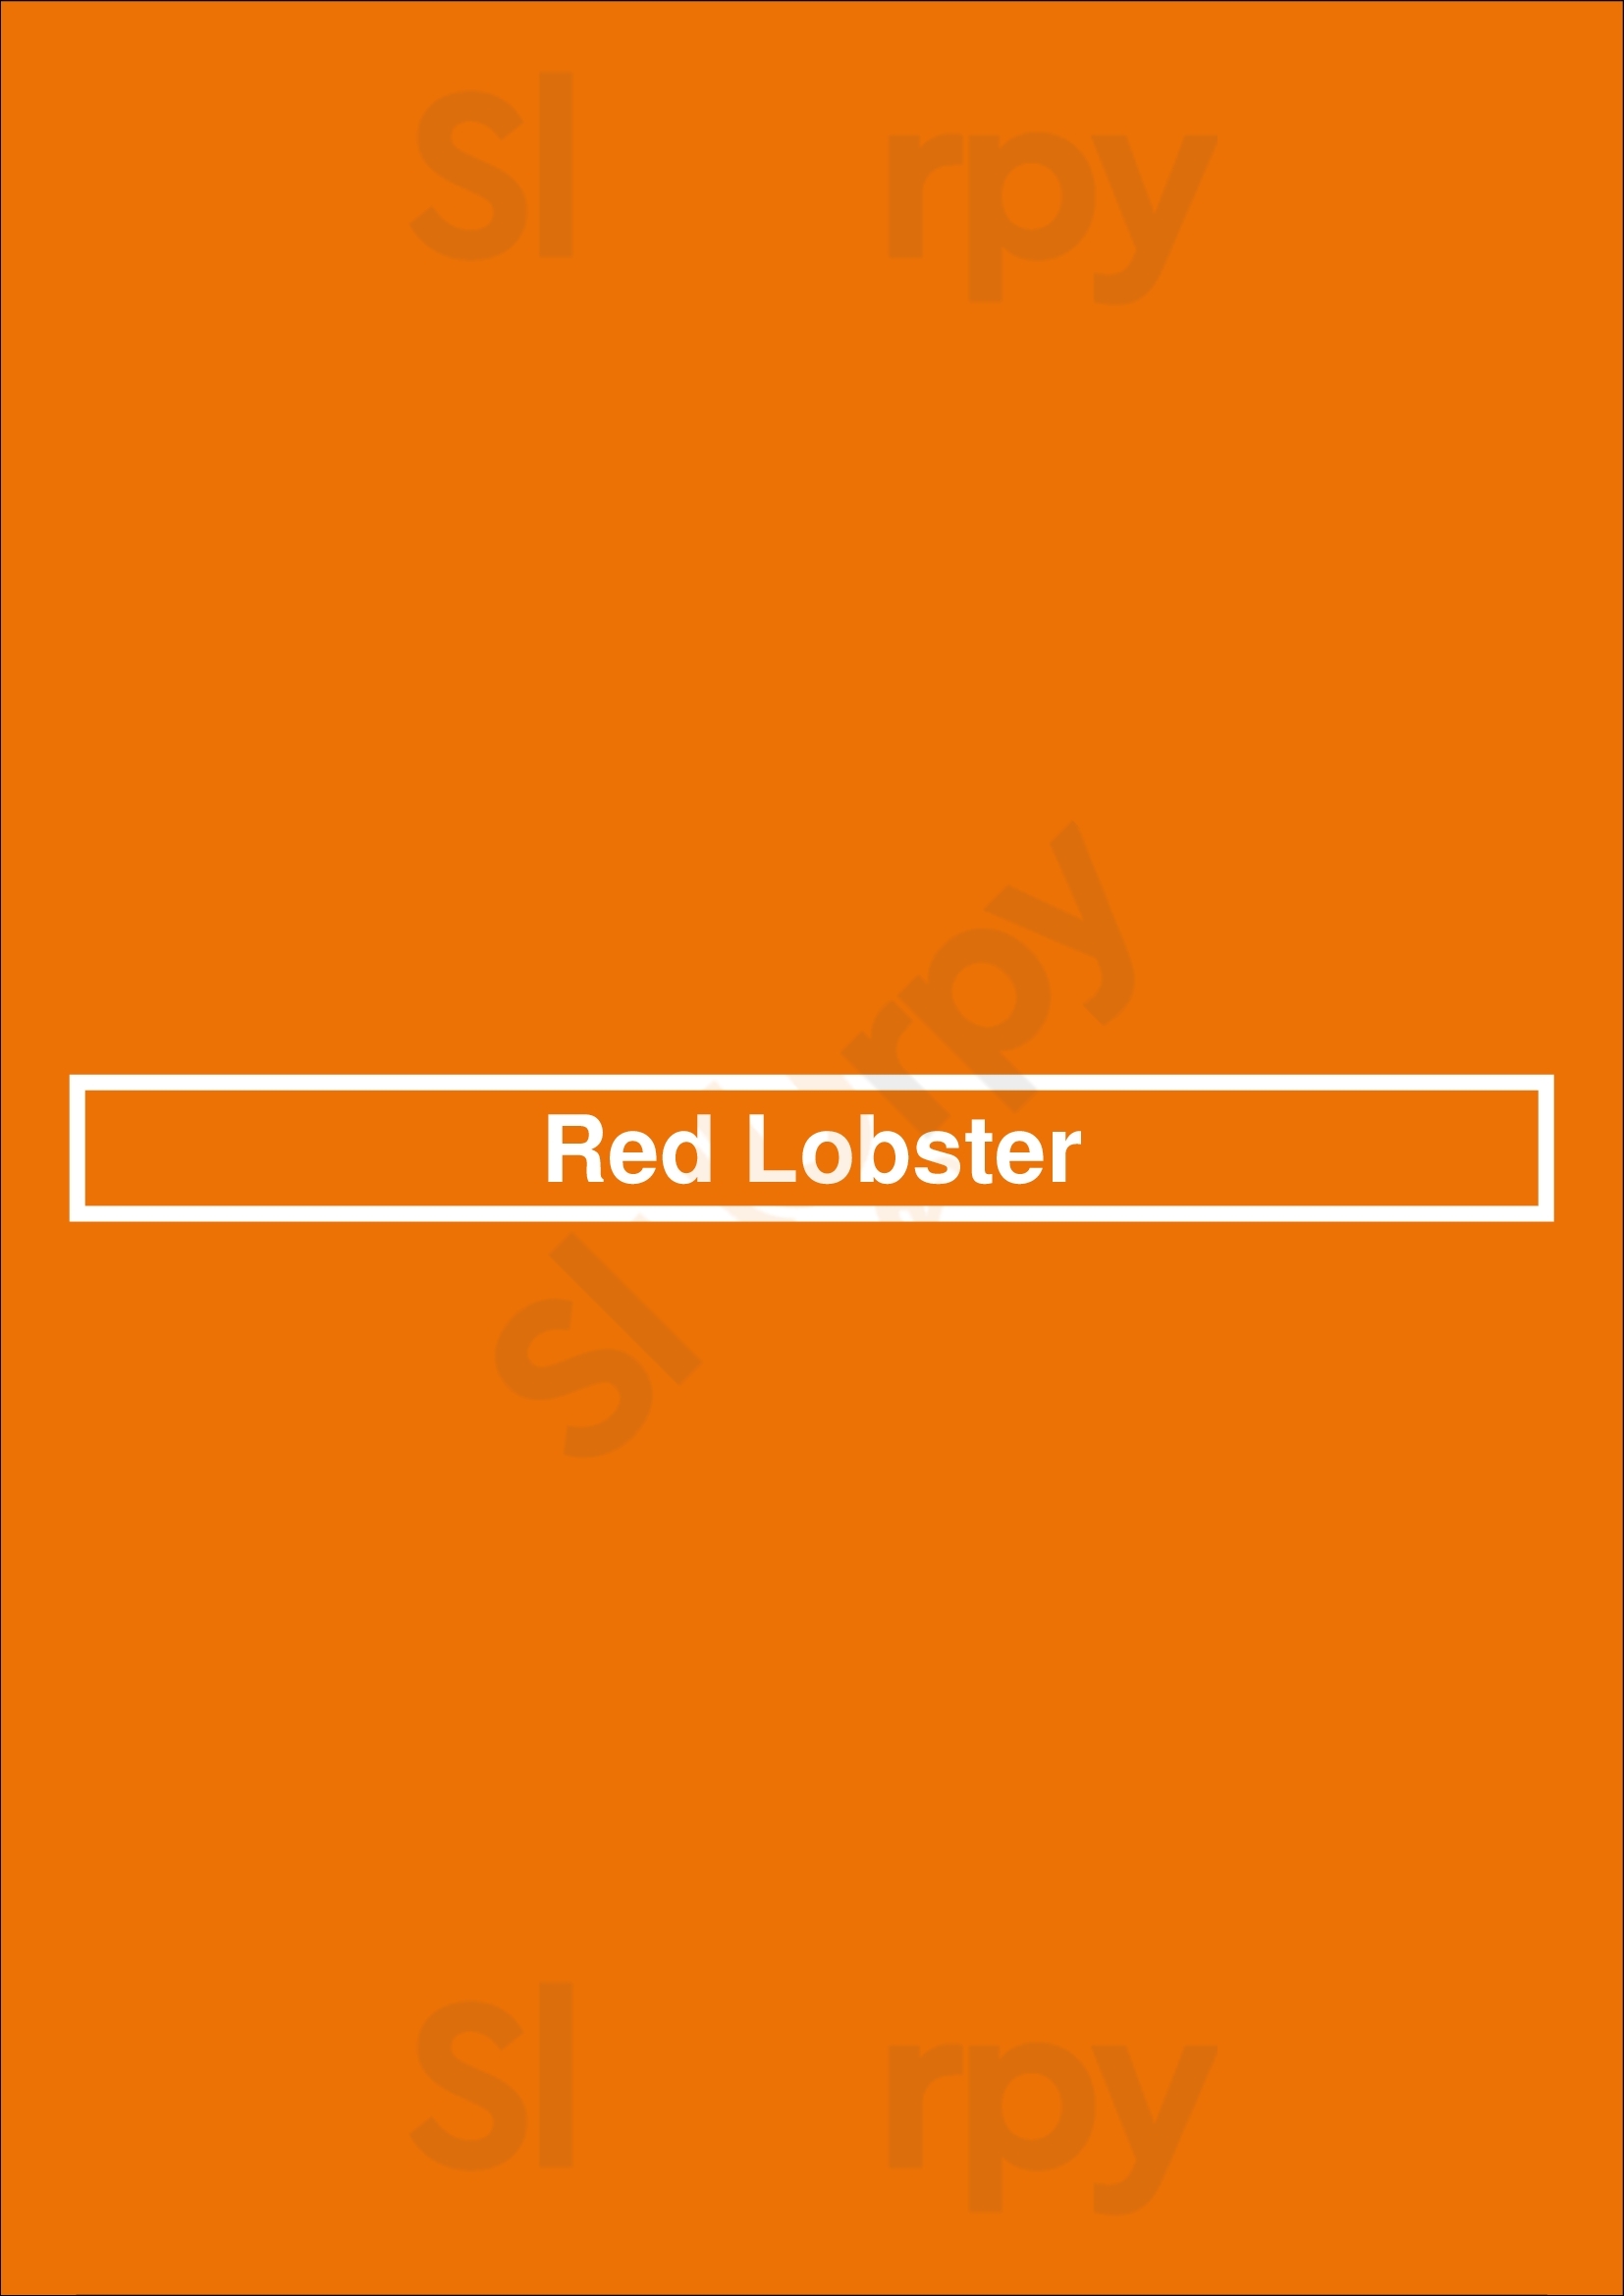 Red Lobster Brampton Menu - 1